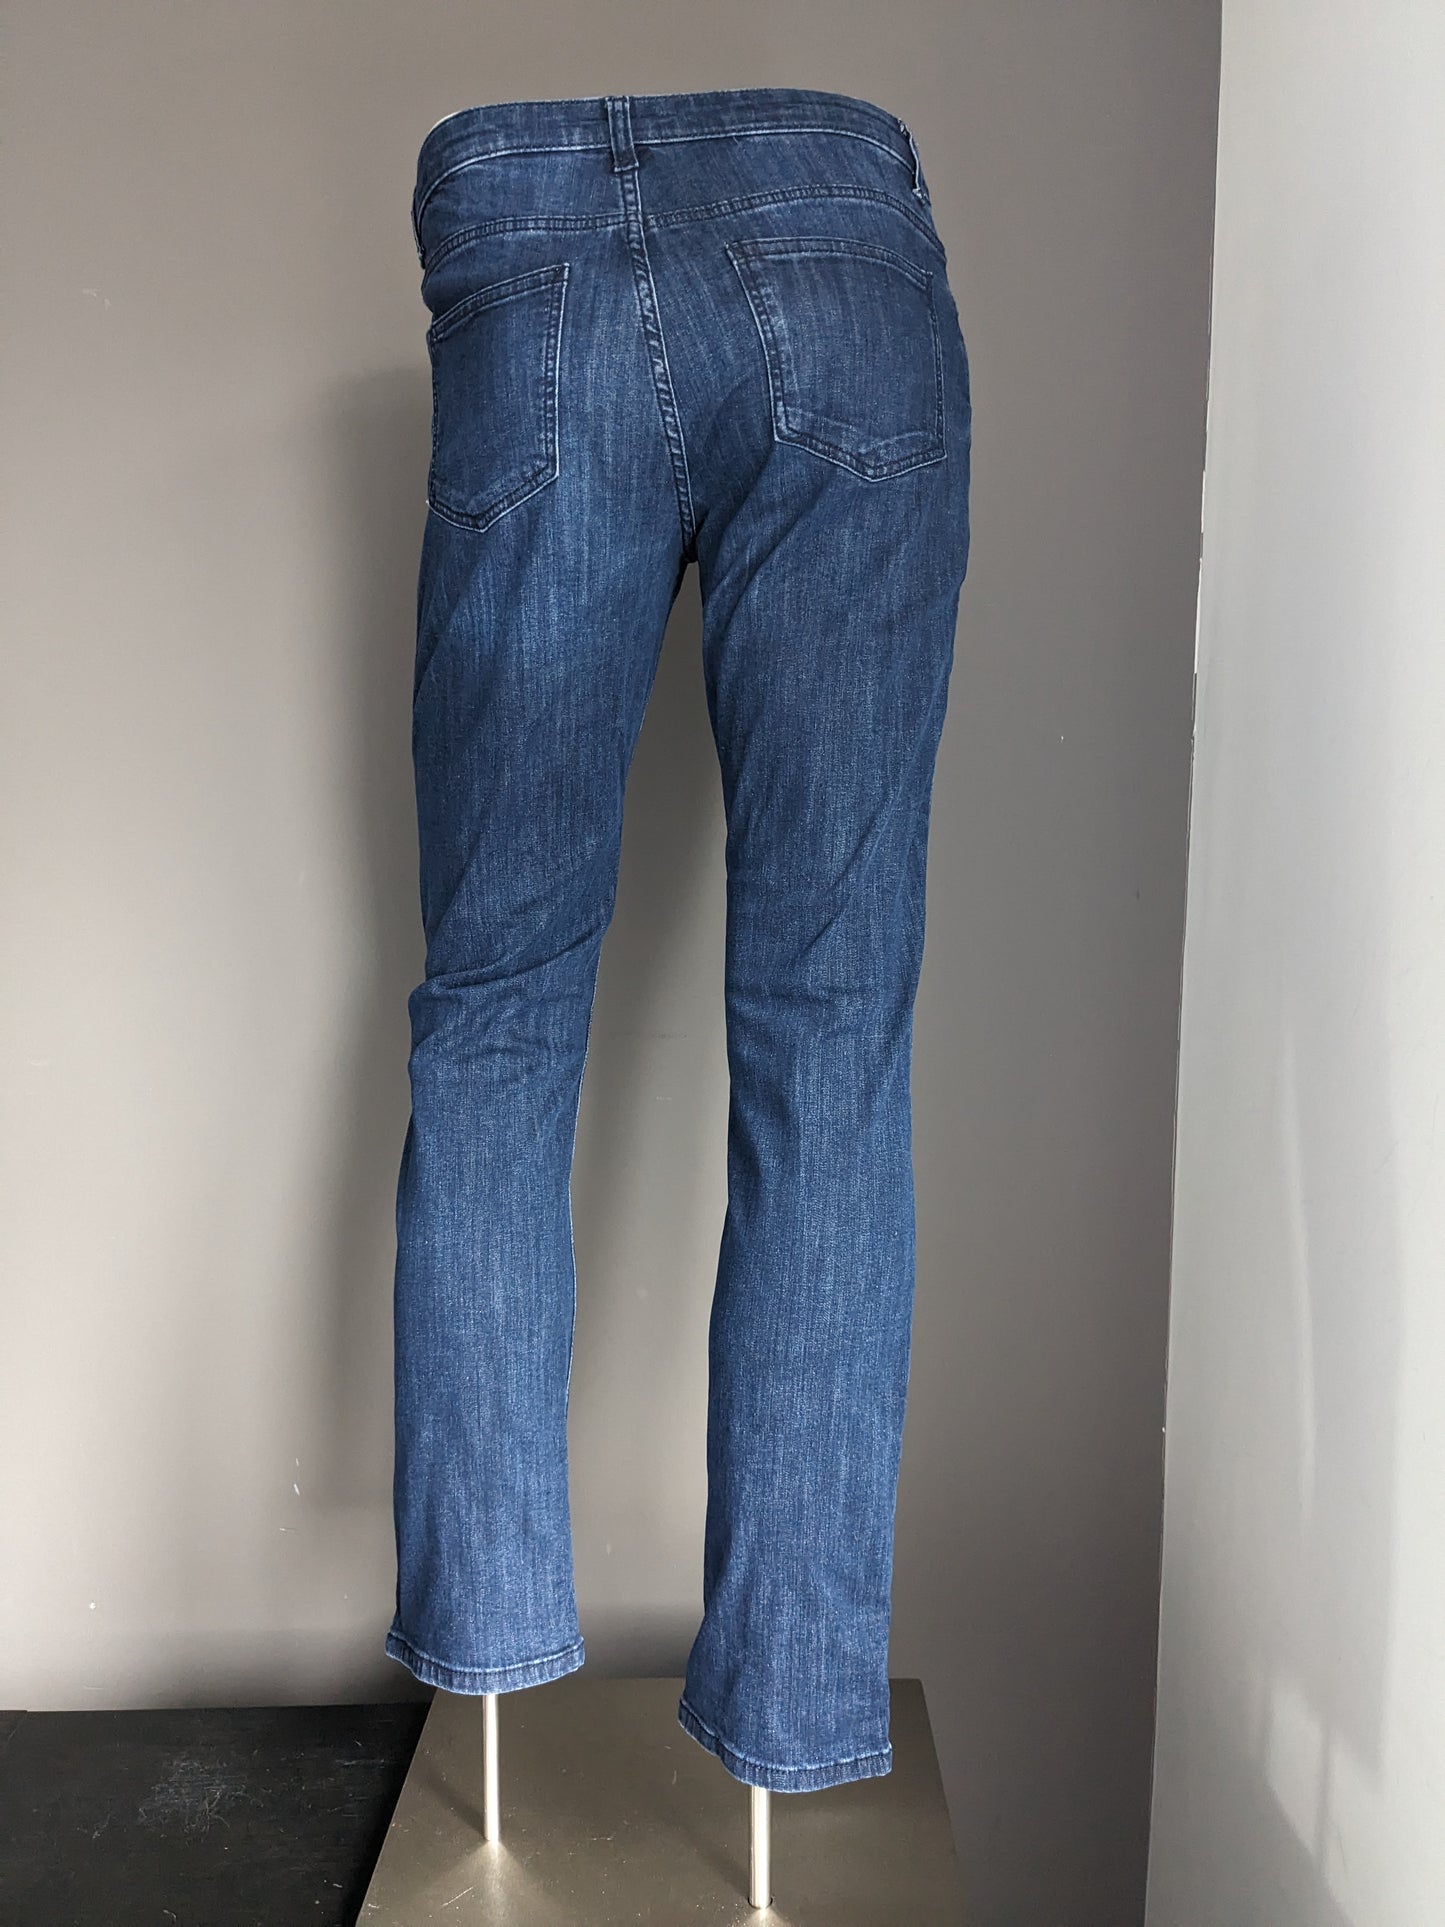 C&A Jeans. Bleu foncé. W29 - L32. Étirement en ajustement droit.